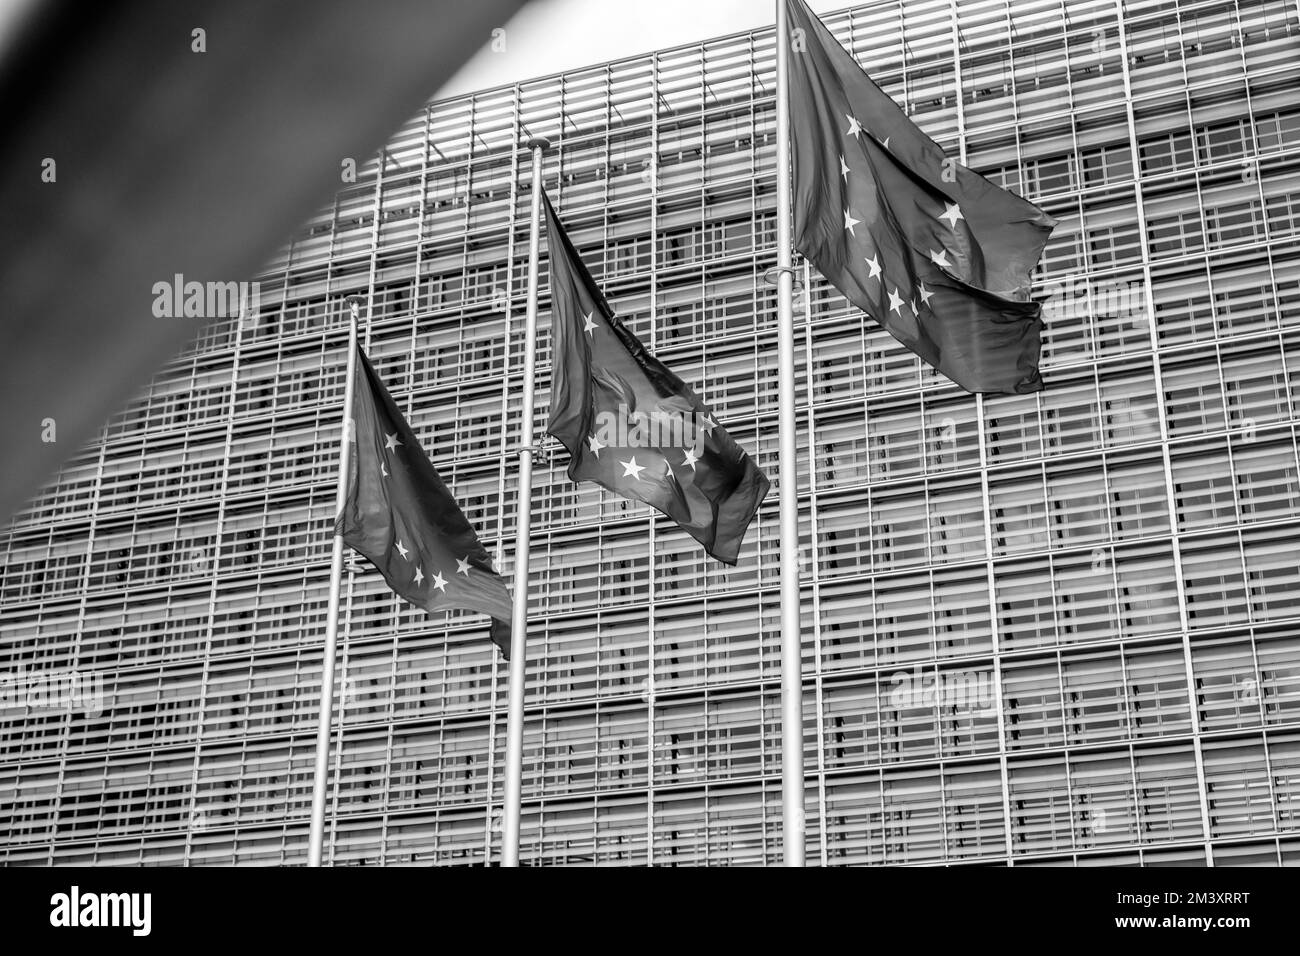 Mehrere offizielle europäische Flaggen mit den blauen und gelben Sternen sind entlang des Berlaymont-Gebäudes gehisst | plusieurs drapeaux officiels europeens Stockfoto